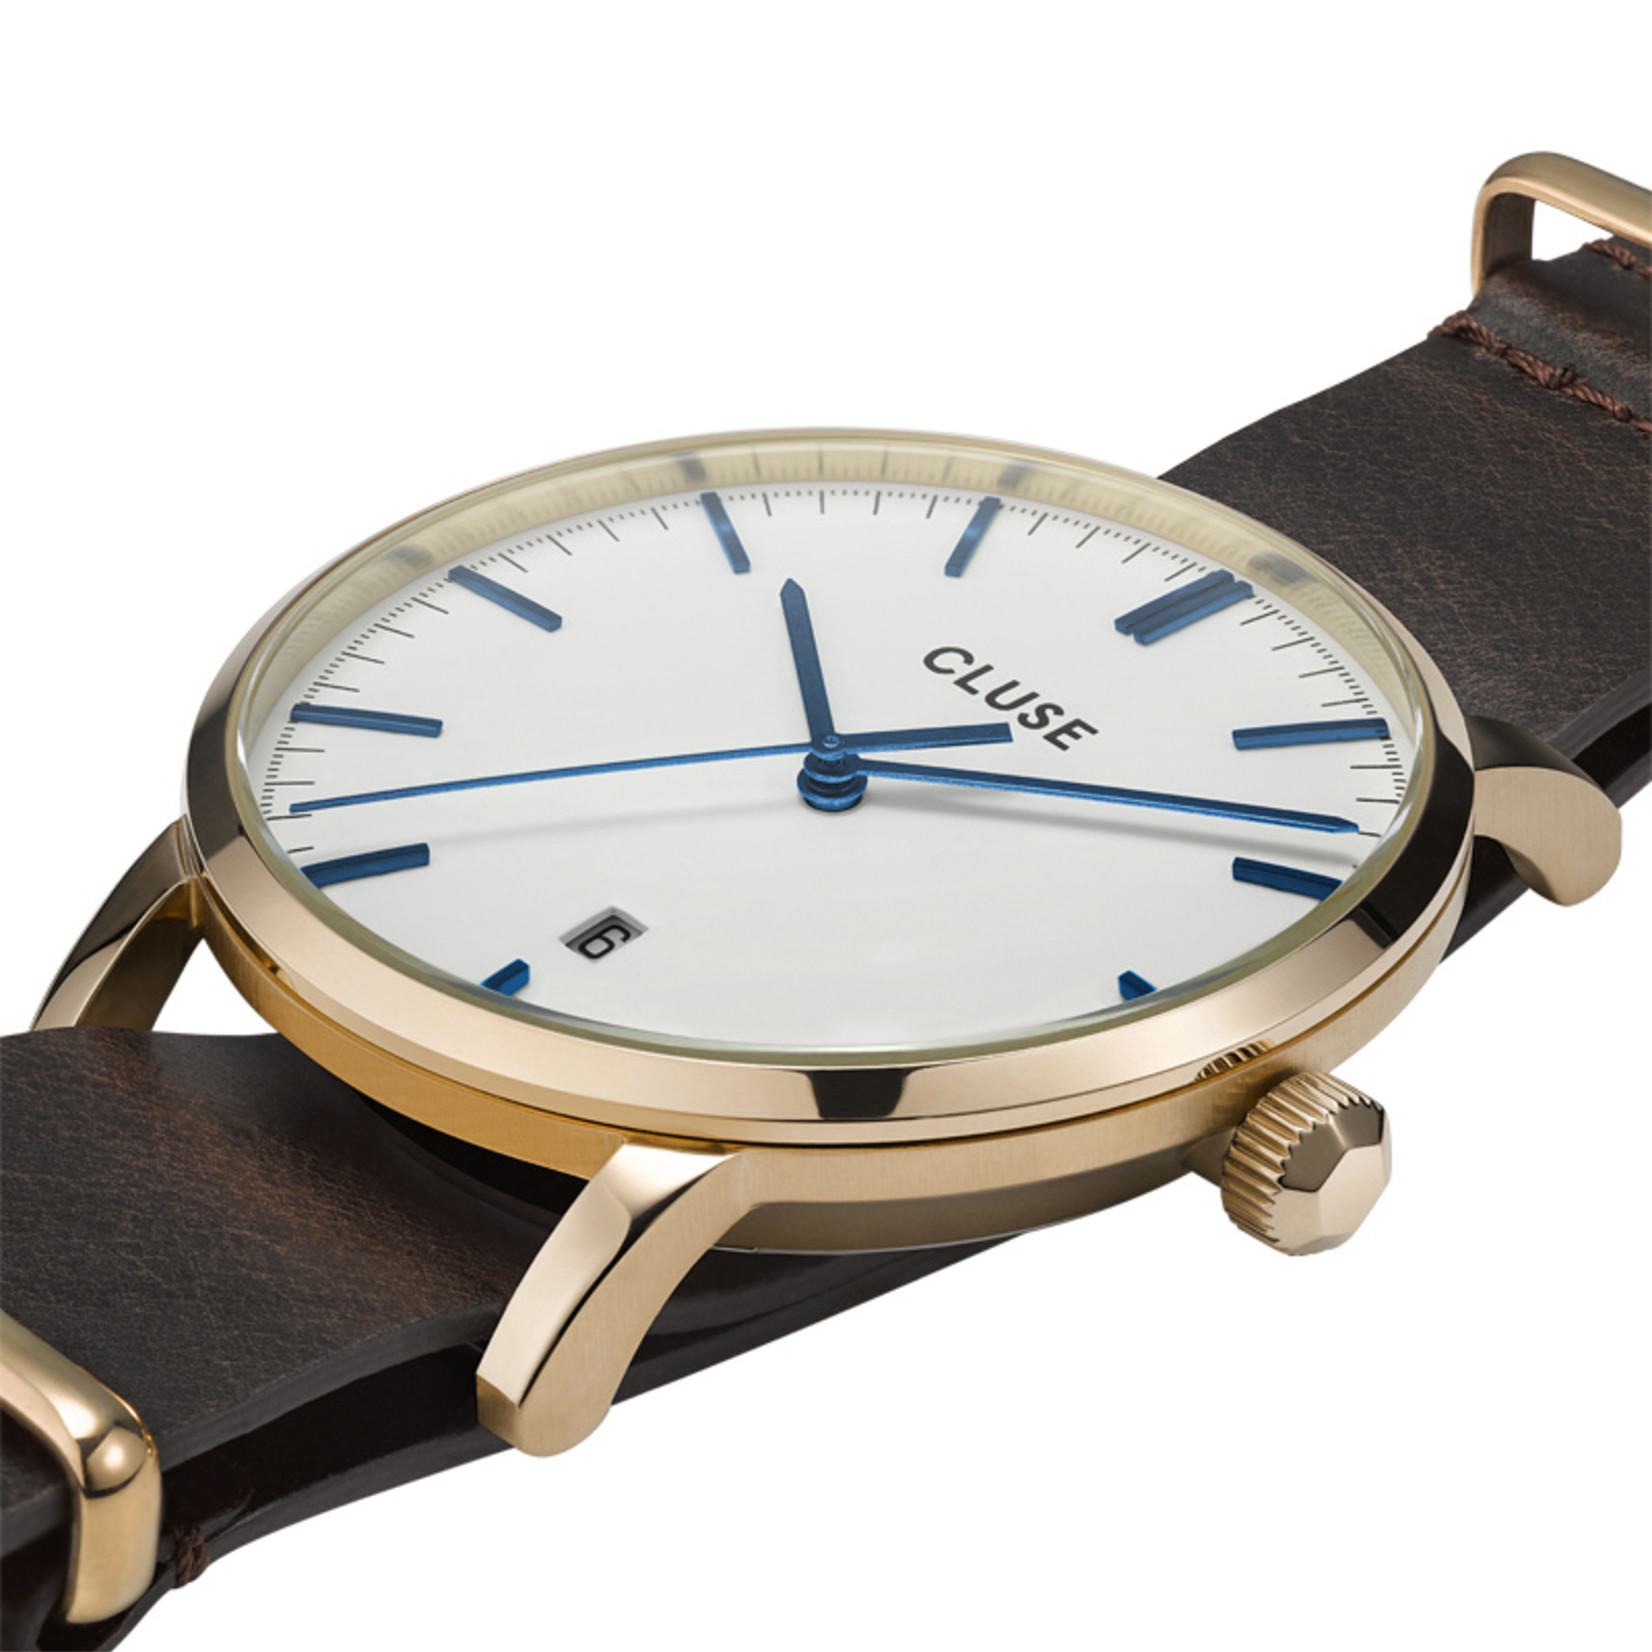 Cluse günstig kaufen Cluse Uhr Aravis dunkelbraun-weiß I Leder I NATO-Armband